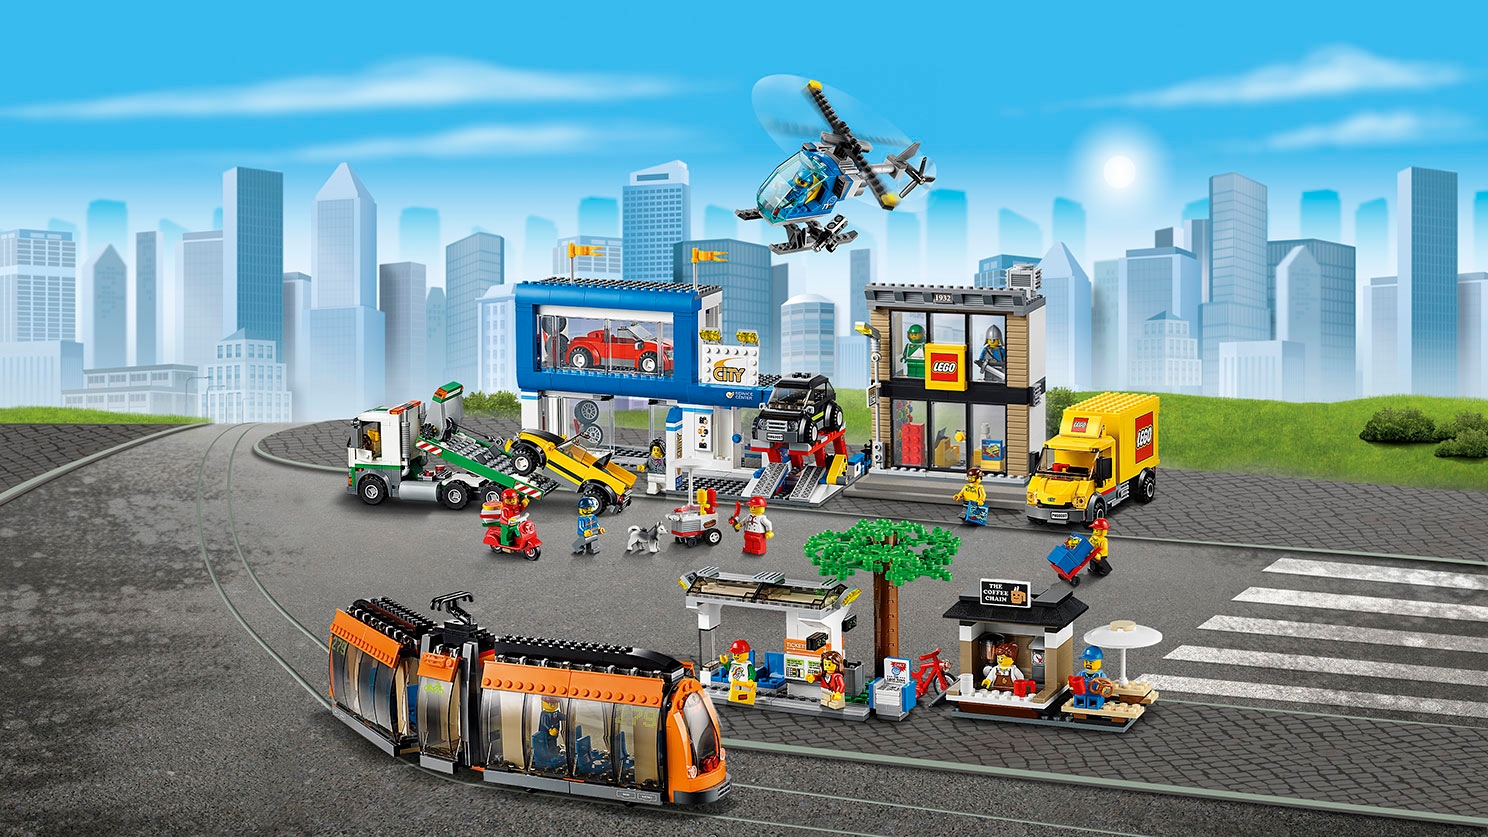 レゴ®シティのまち 60097 - レゴ®シティ セット - LEGO.comキッズ